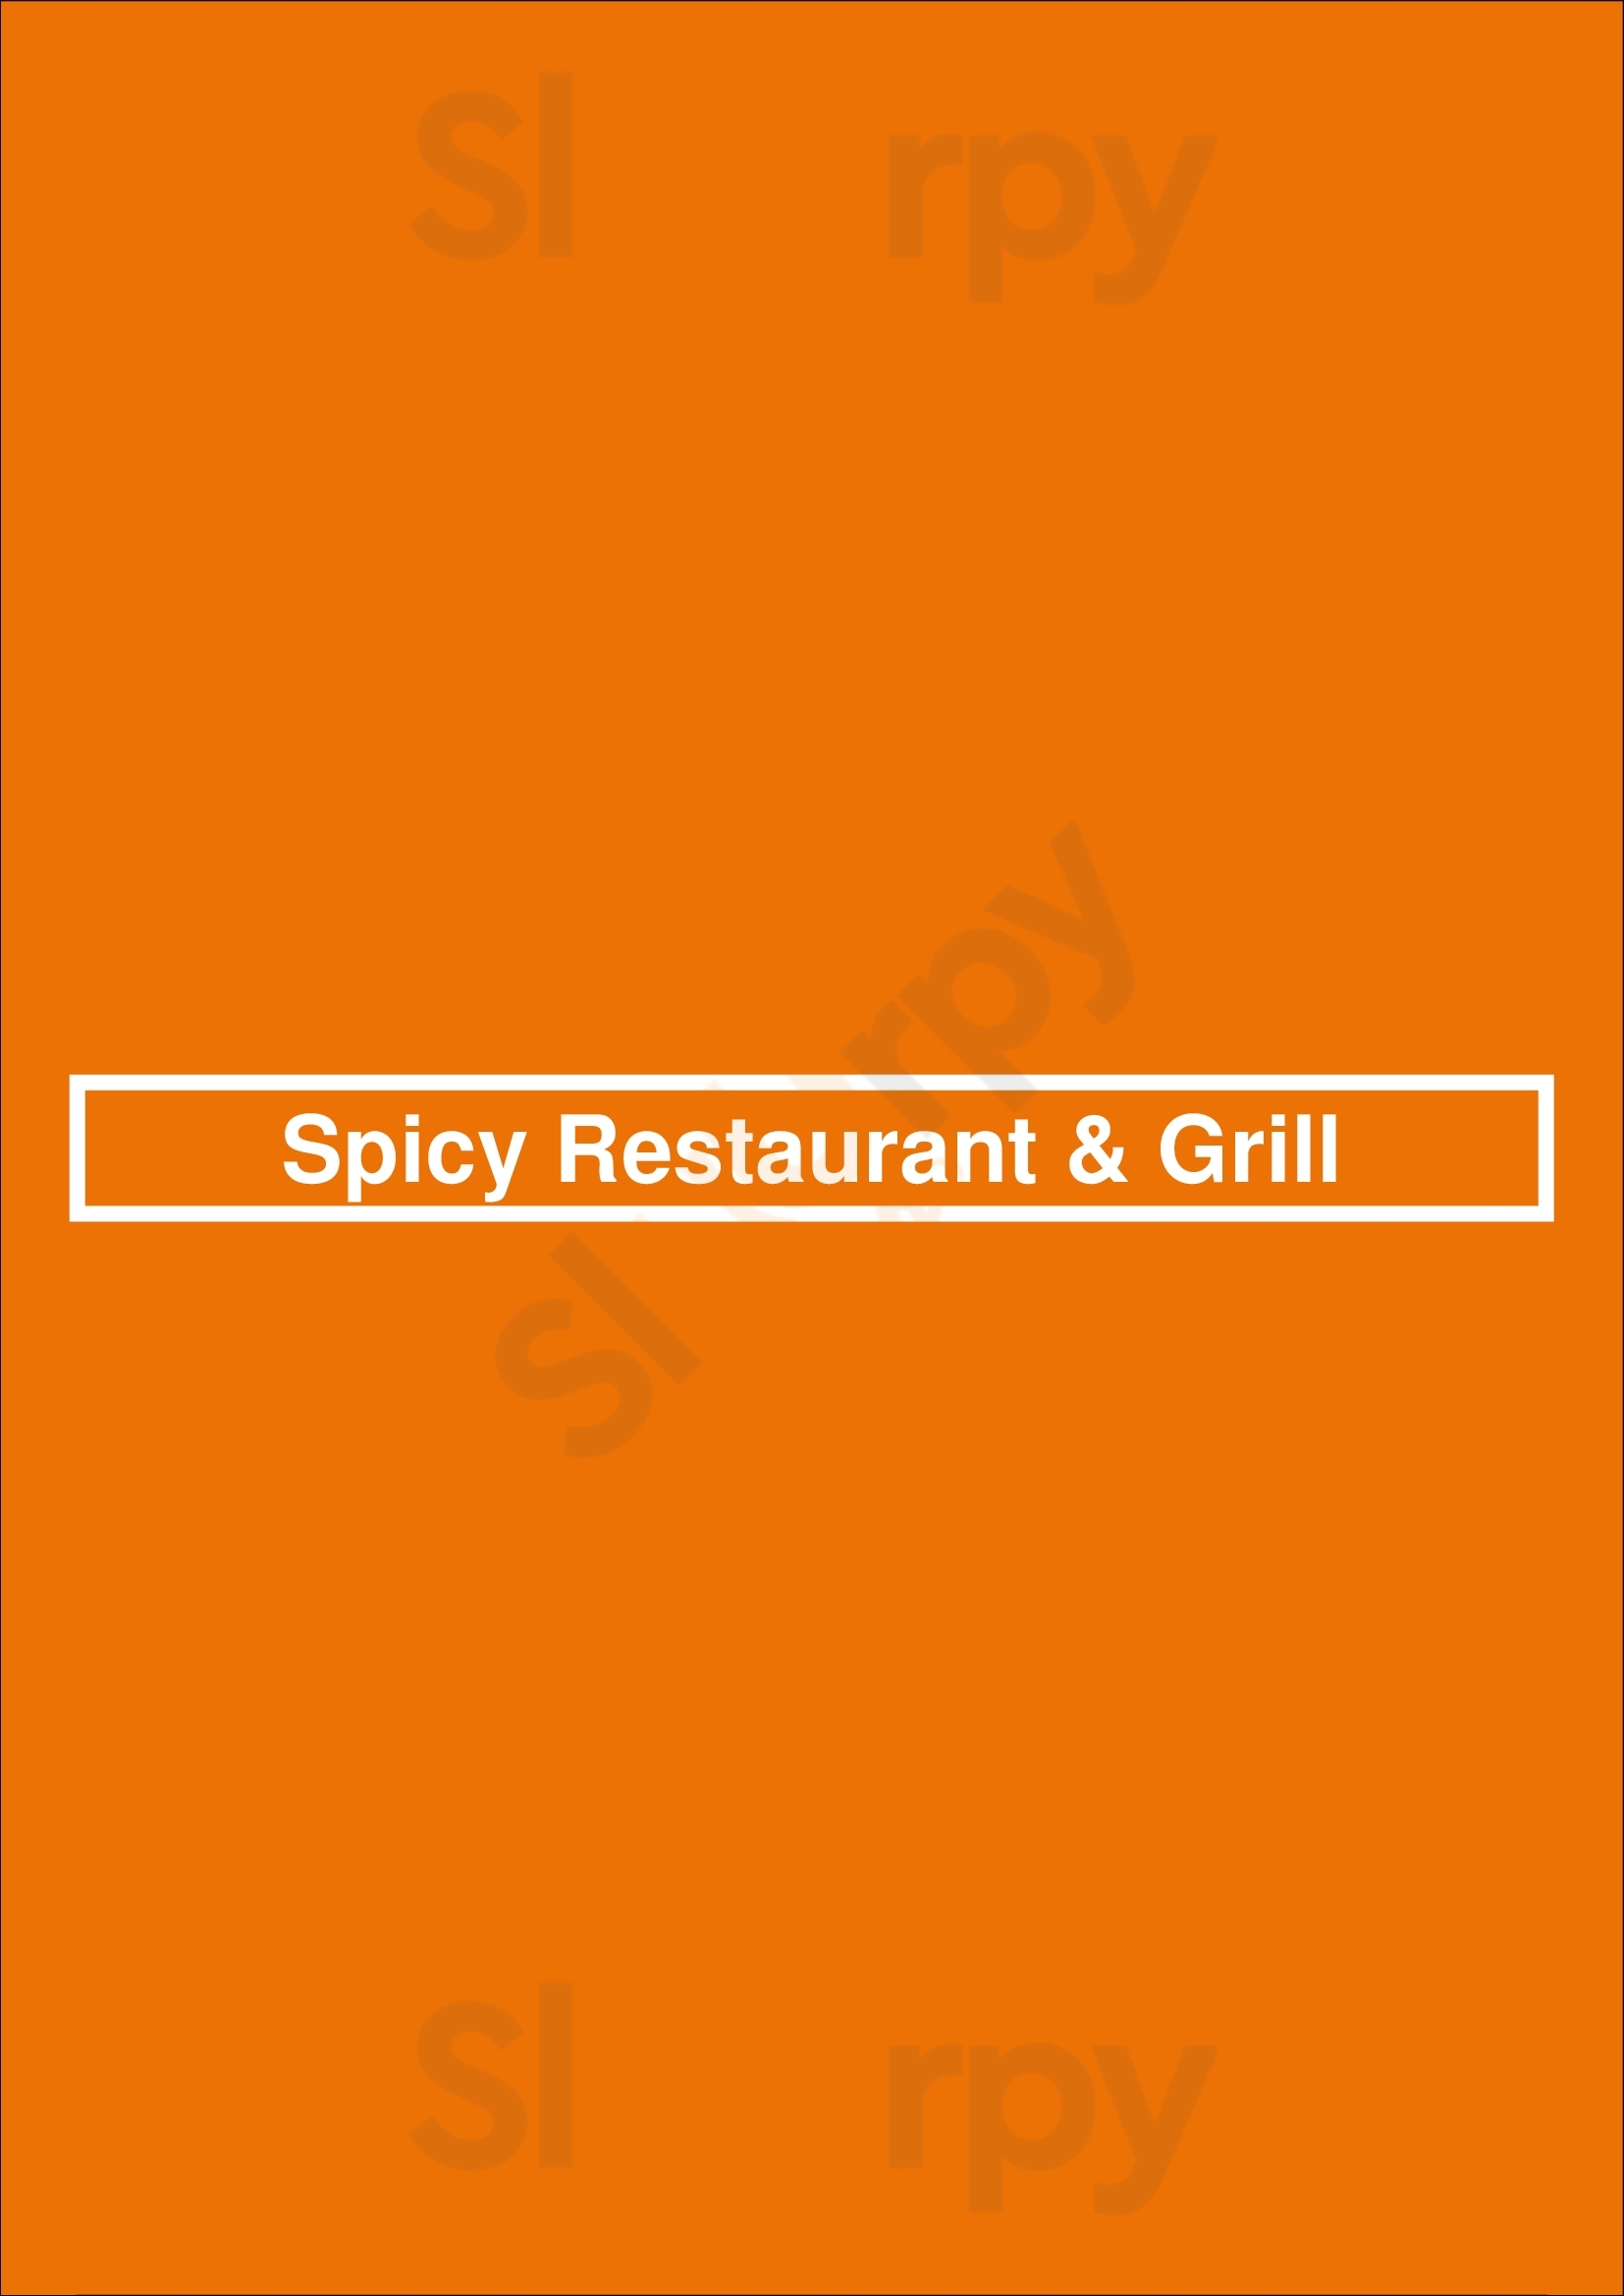 Spicy Restaurant & Grill Lisboa Menu - 1